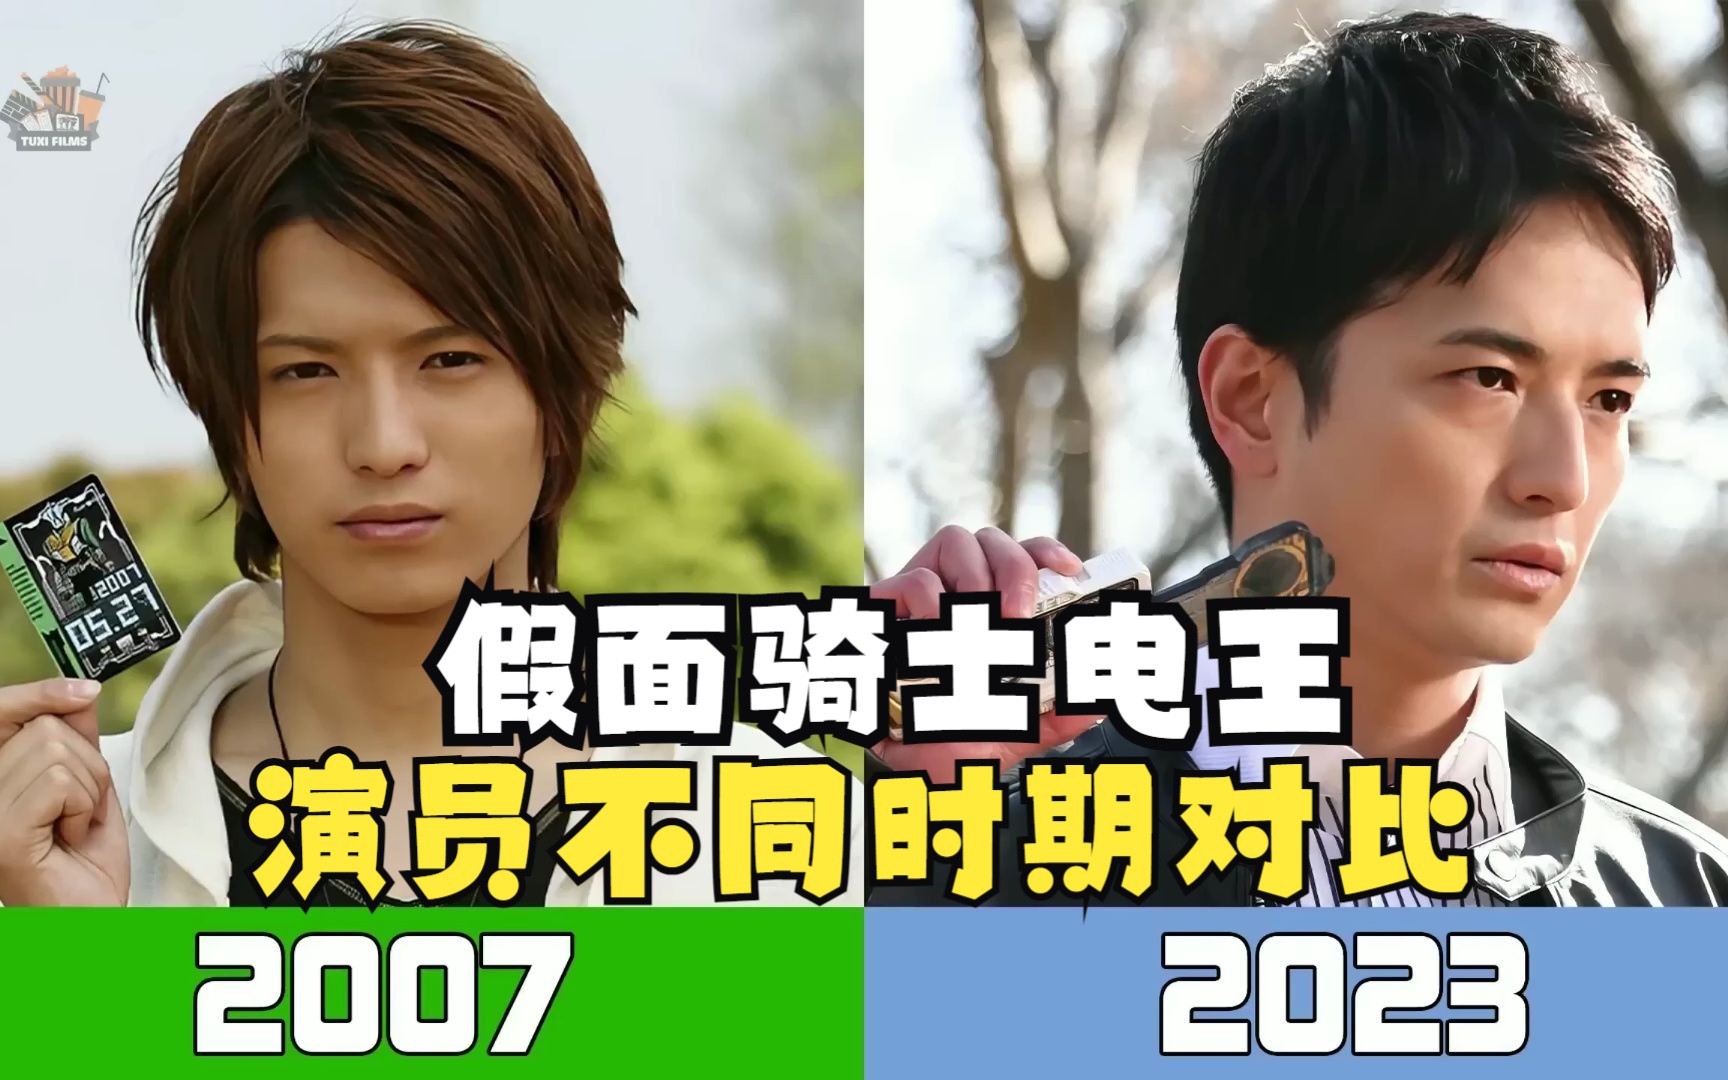 盘点假面骑士电王演员(2007—2023)不同时期对比 期待新剧